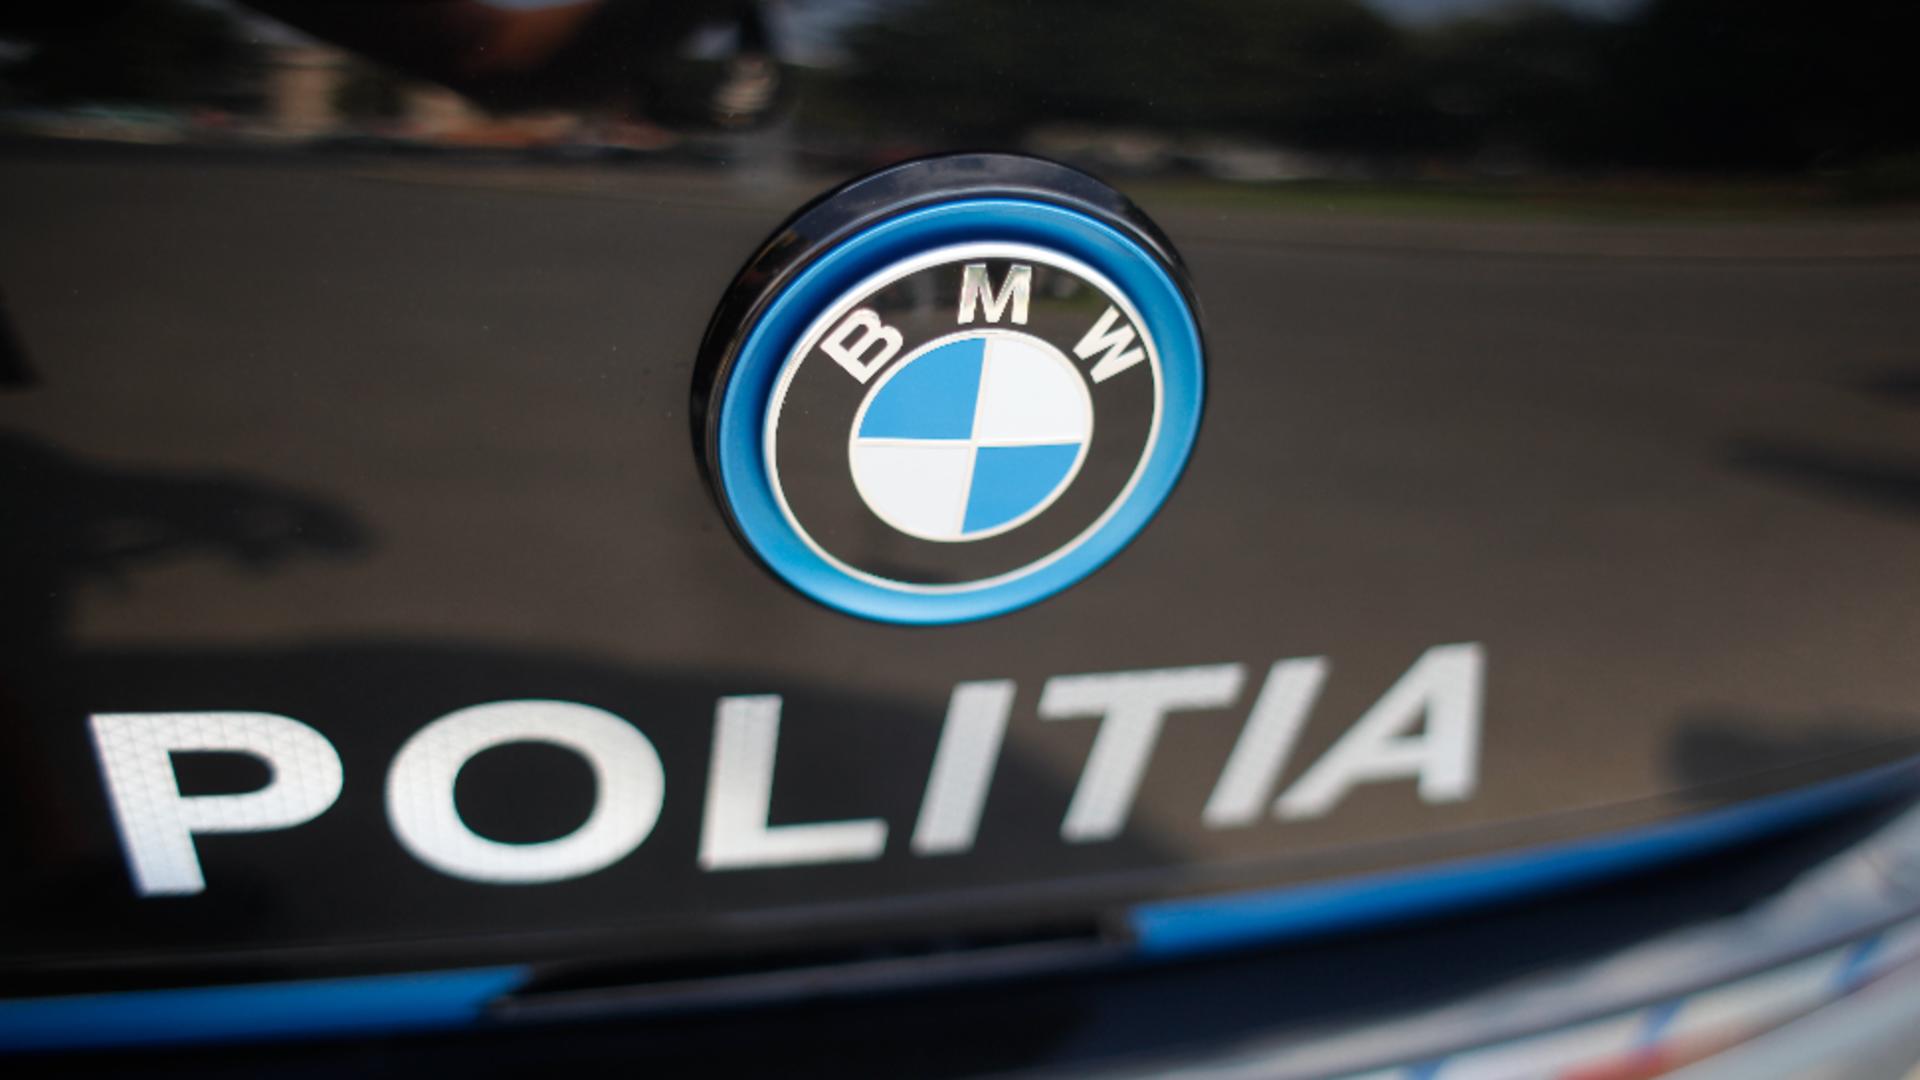 BMW-uri pentru Poliția Română - Automobile Bavaria, informare de presă / Foto: Inquam Photos